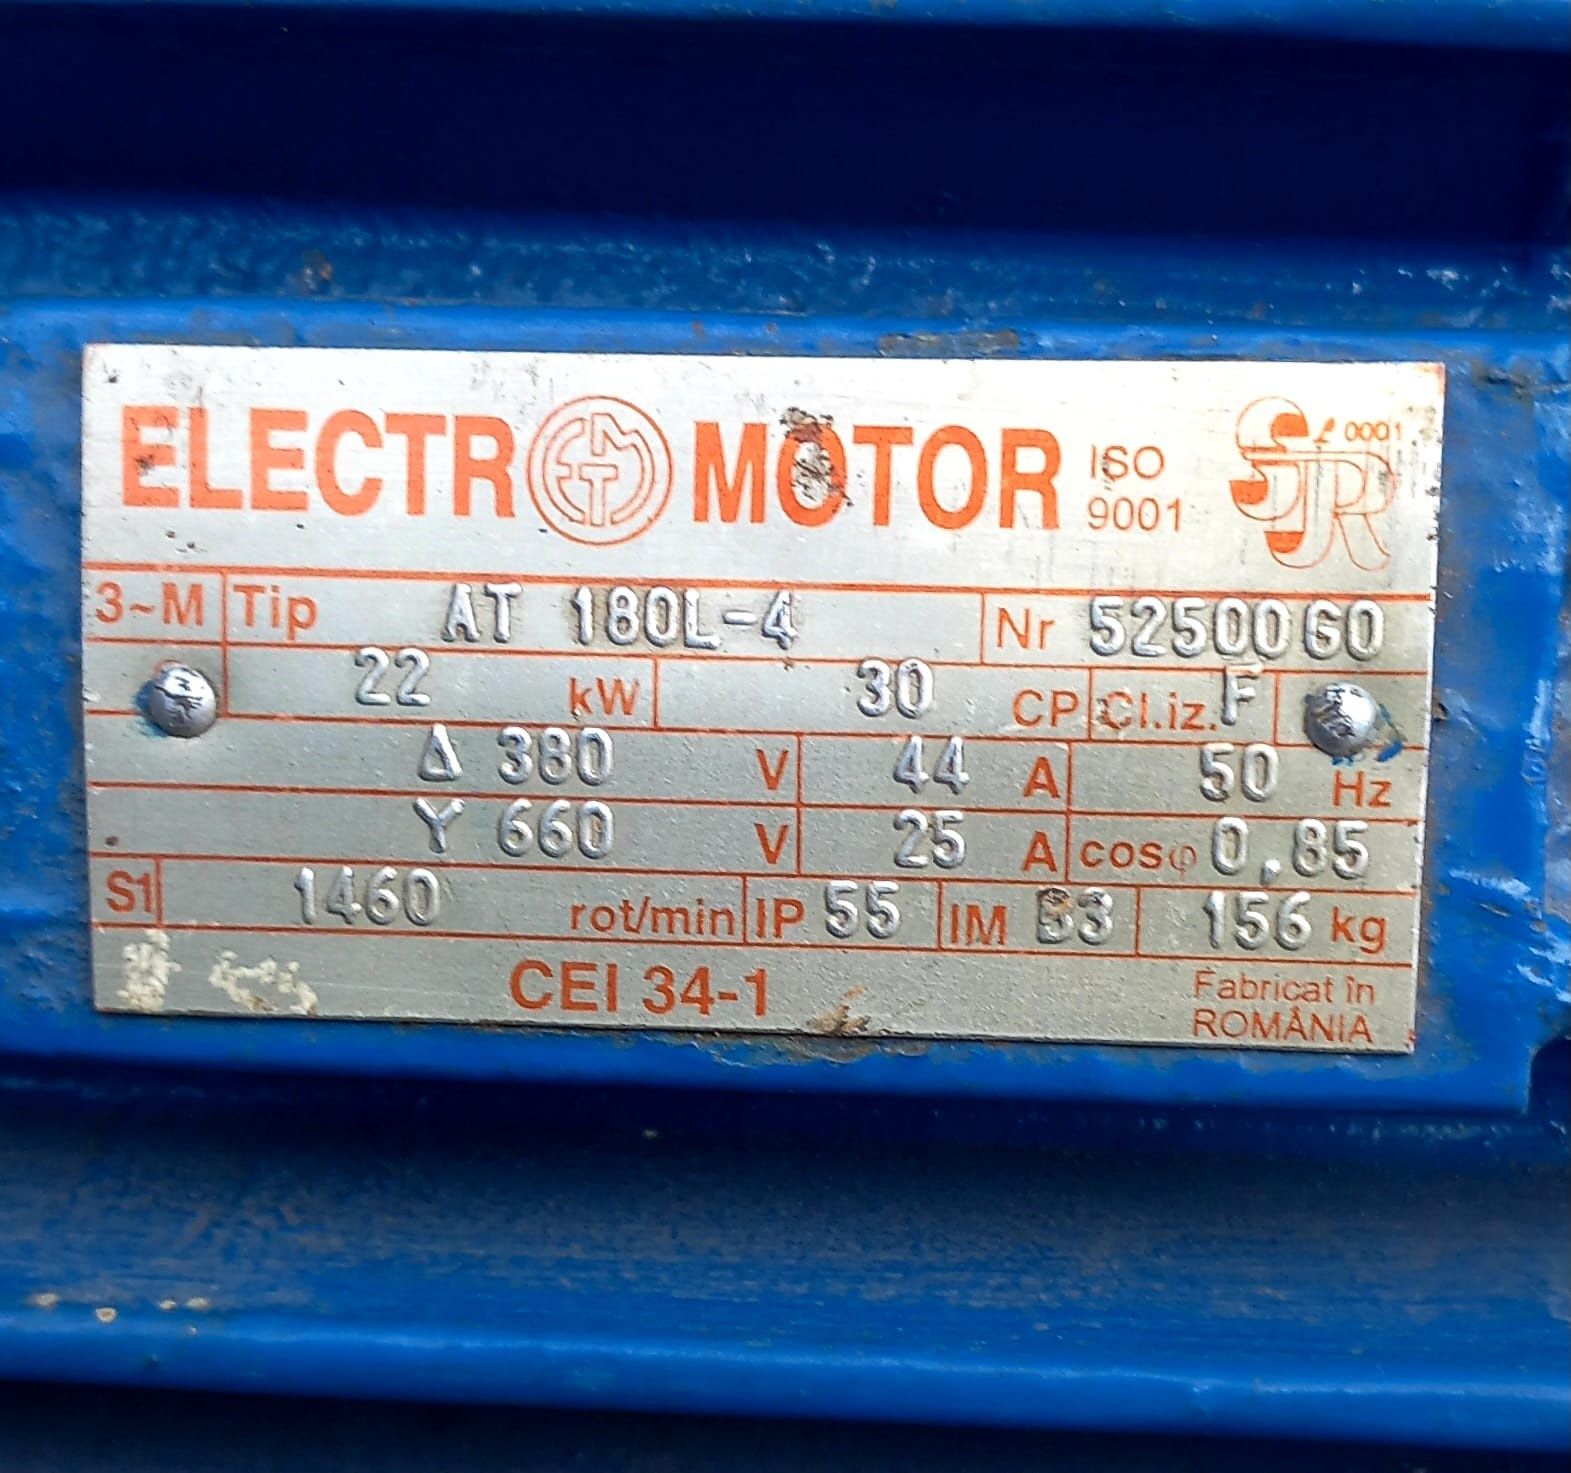 Electromotor AT 180L-4